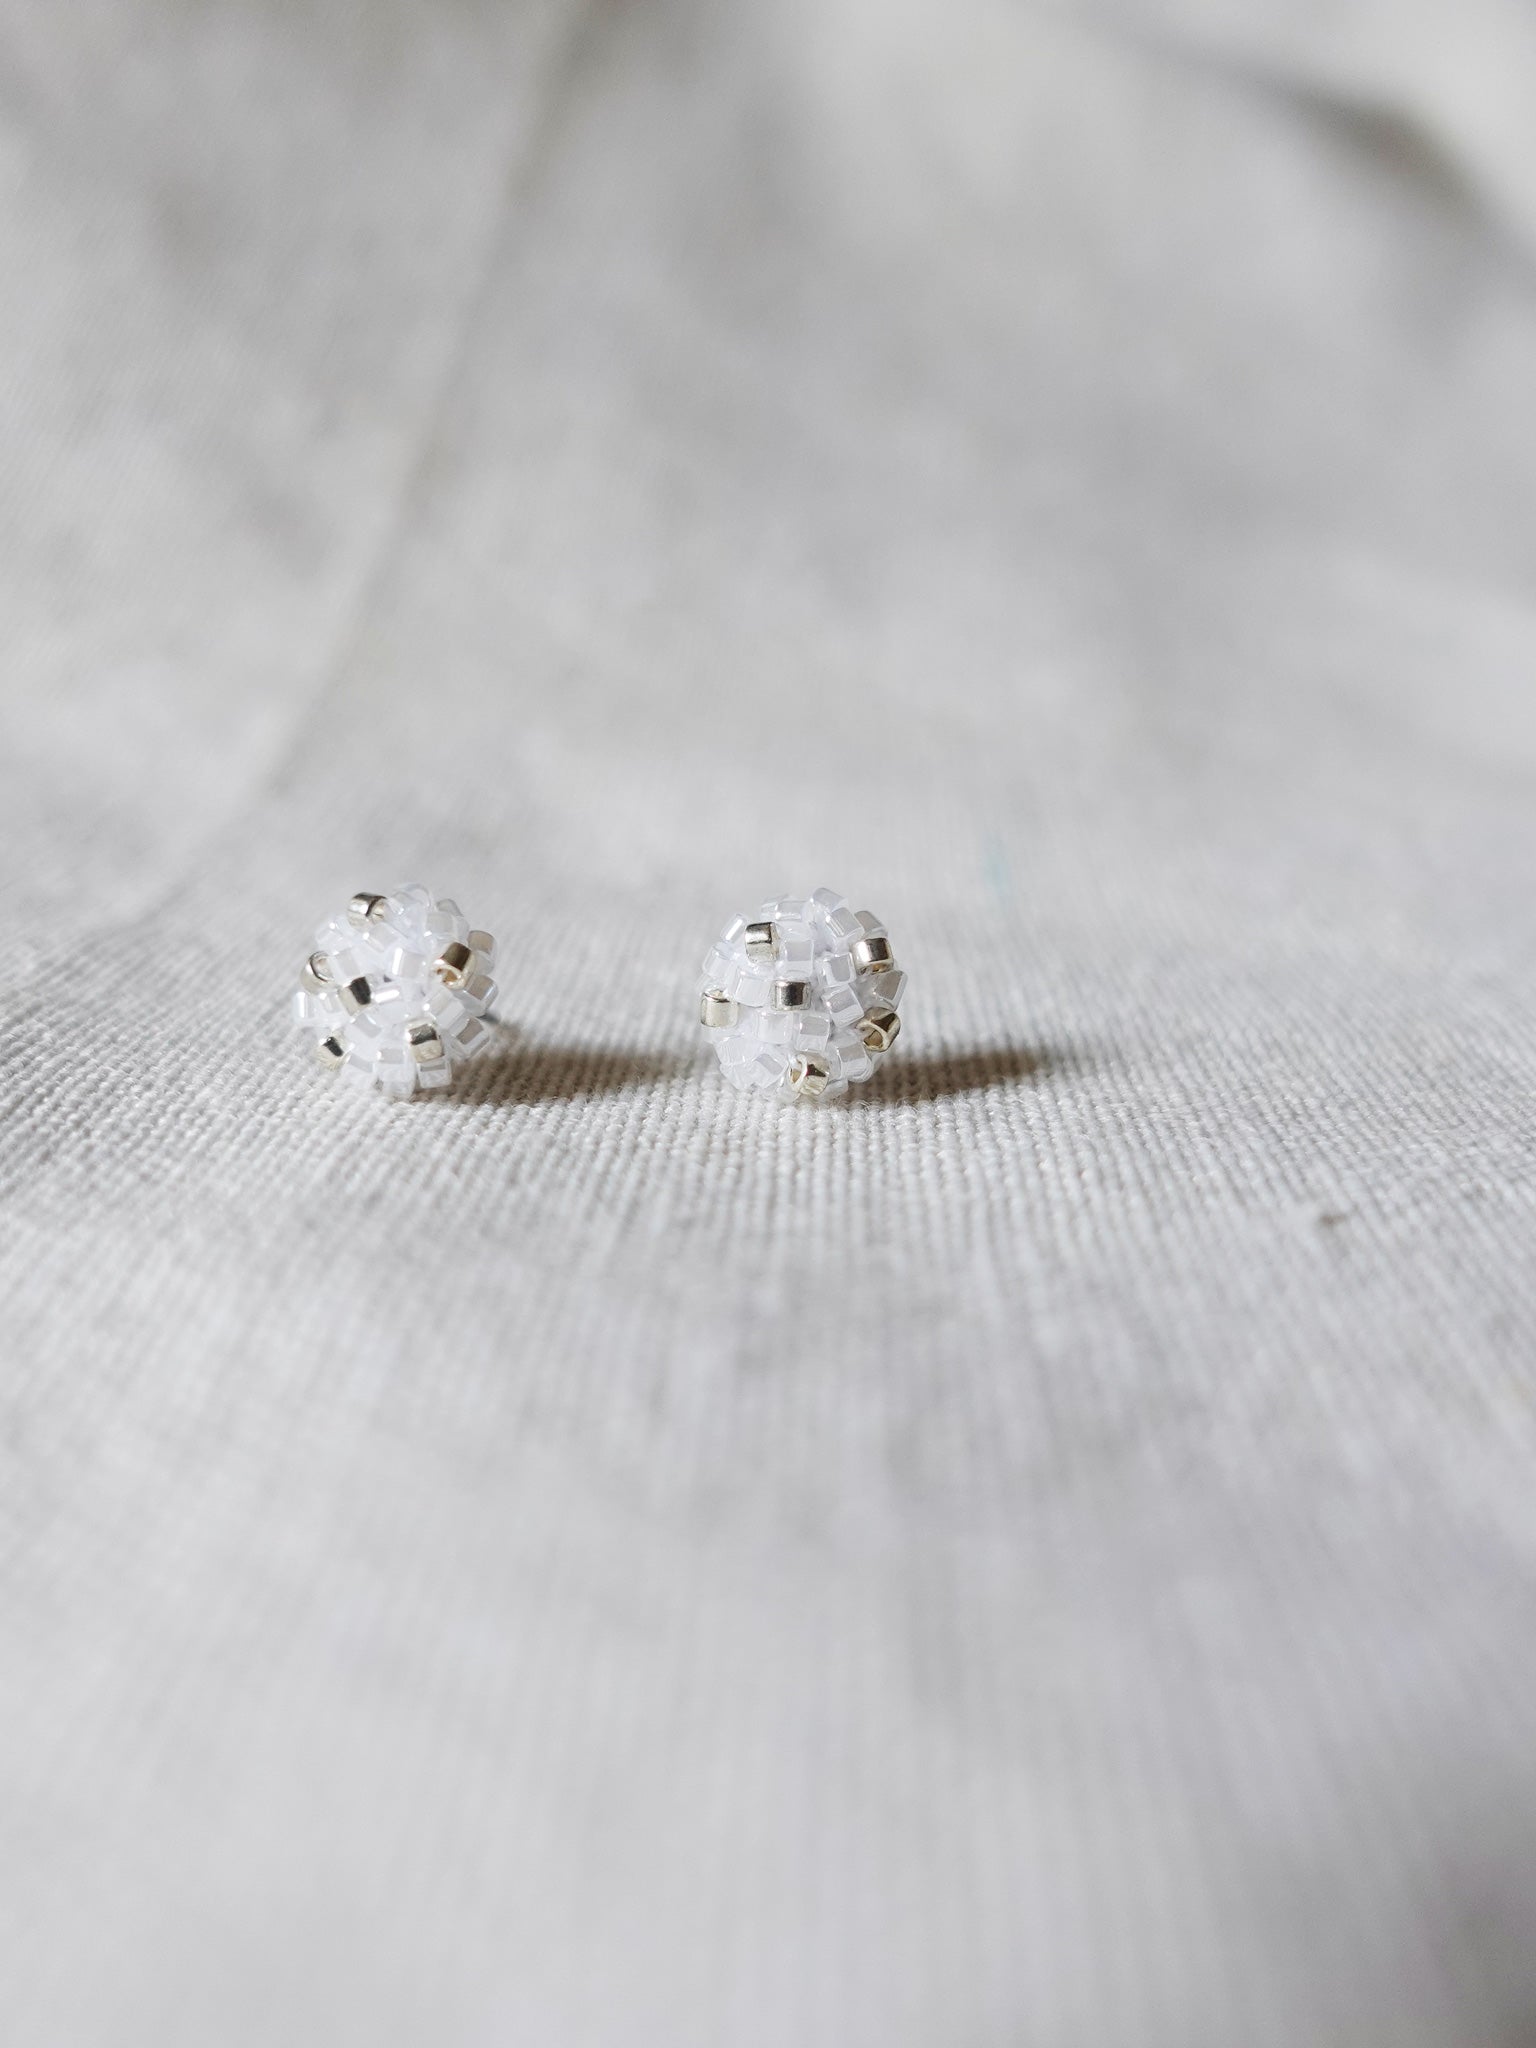 Star Dust Pixie Stud Earrings White